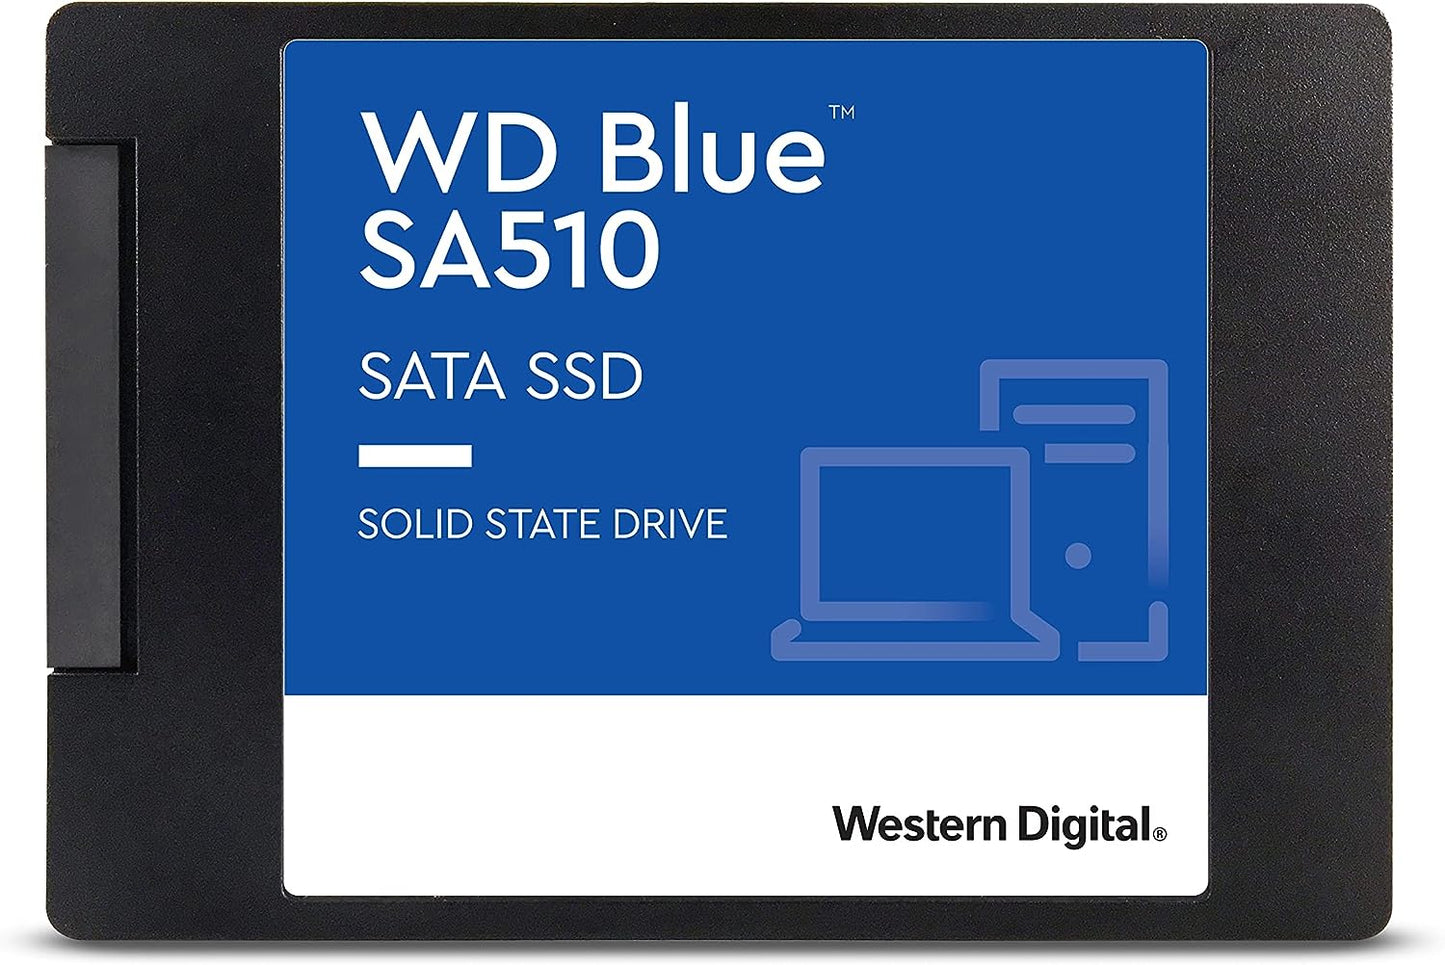 Western Digital 2TB WD Blue SA510 SATA III 6 Gb/s 2.5" SSD Internal Hard Drive (Brand New)